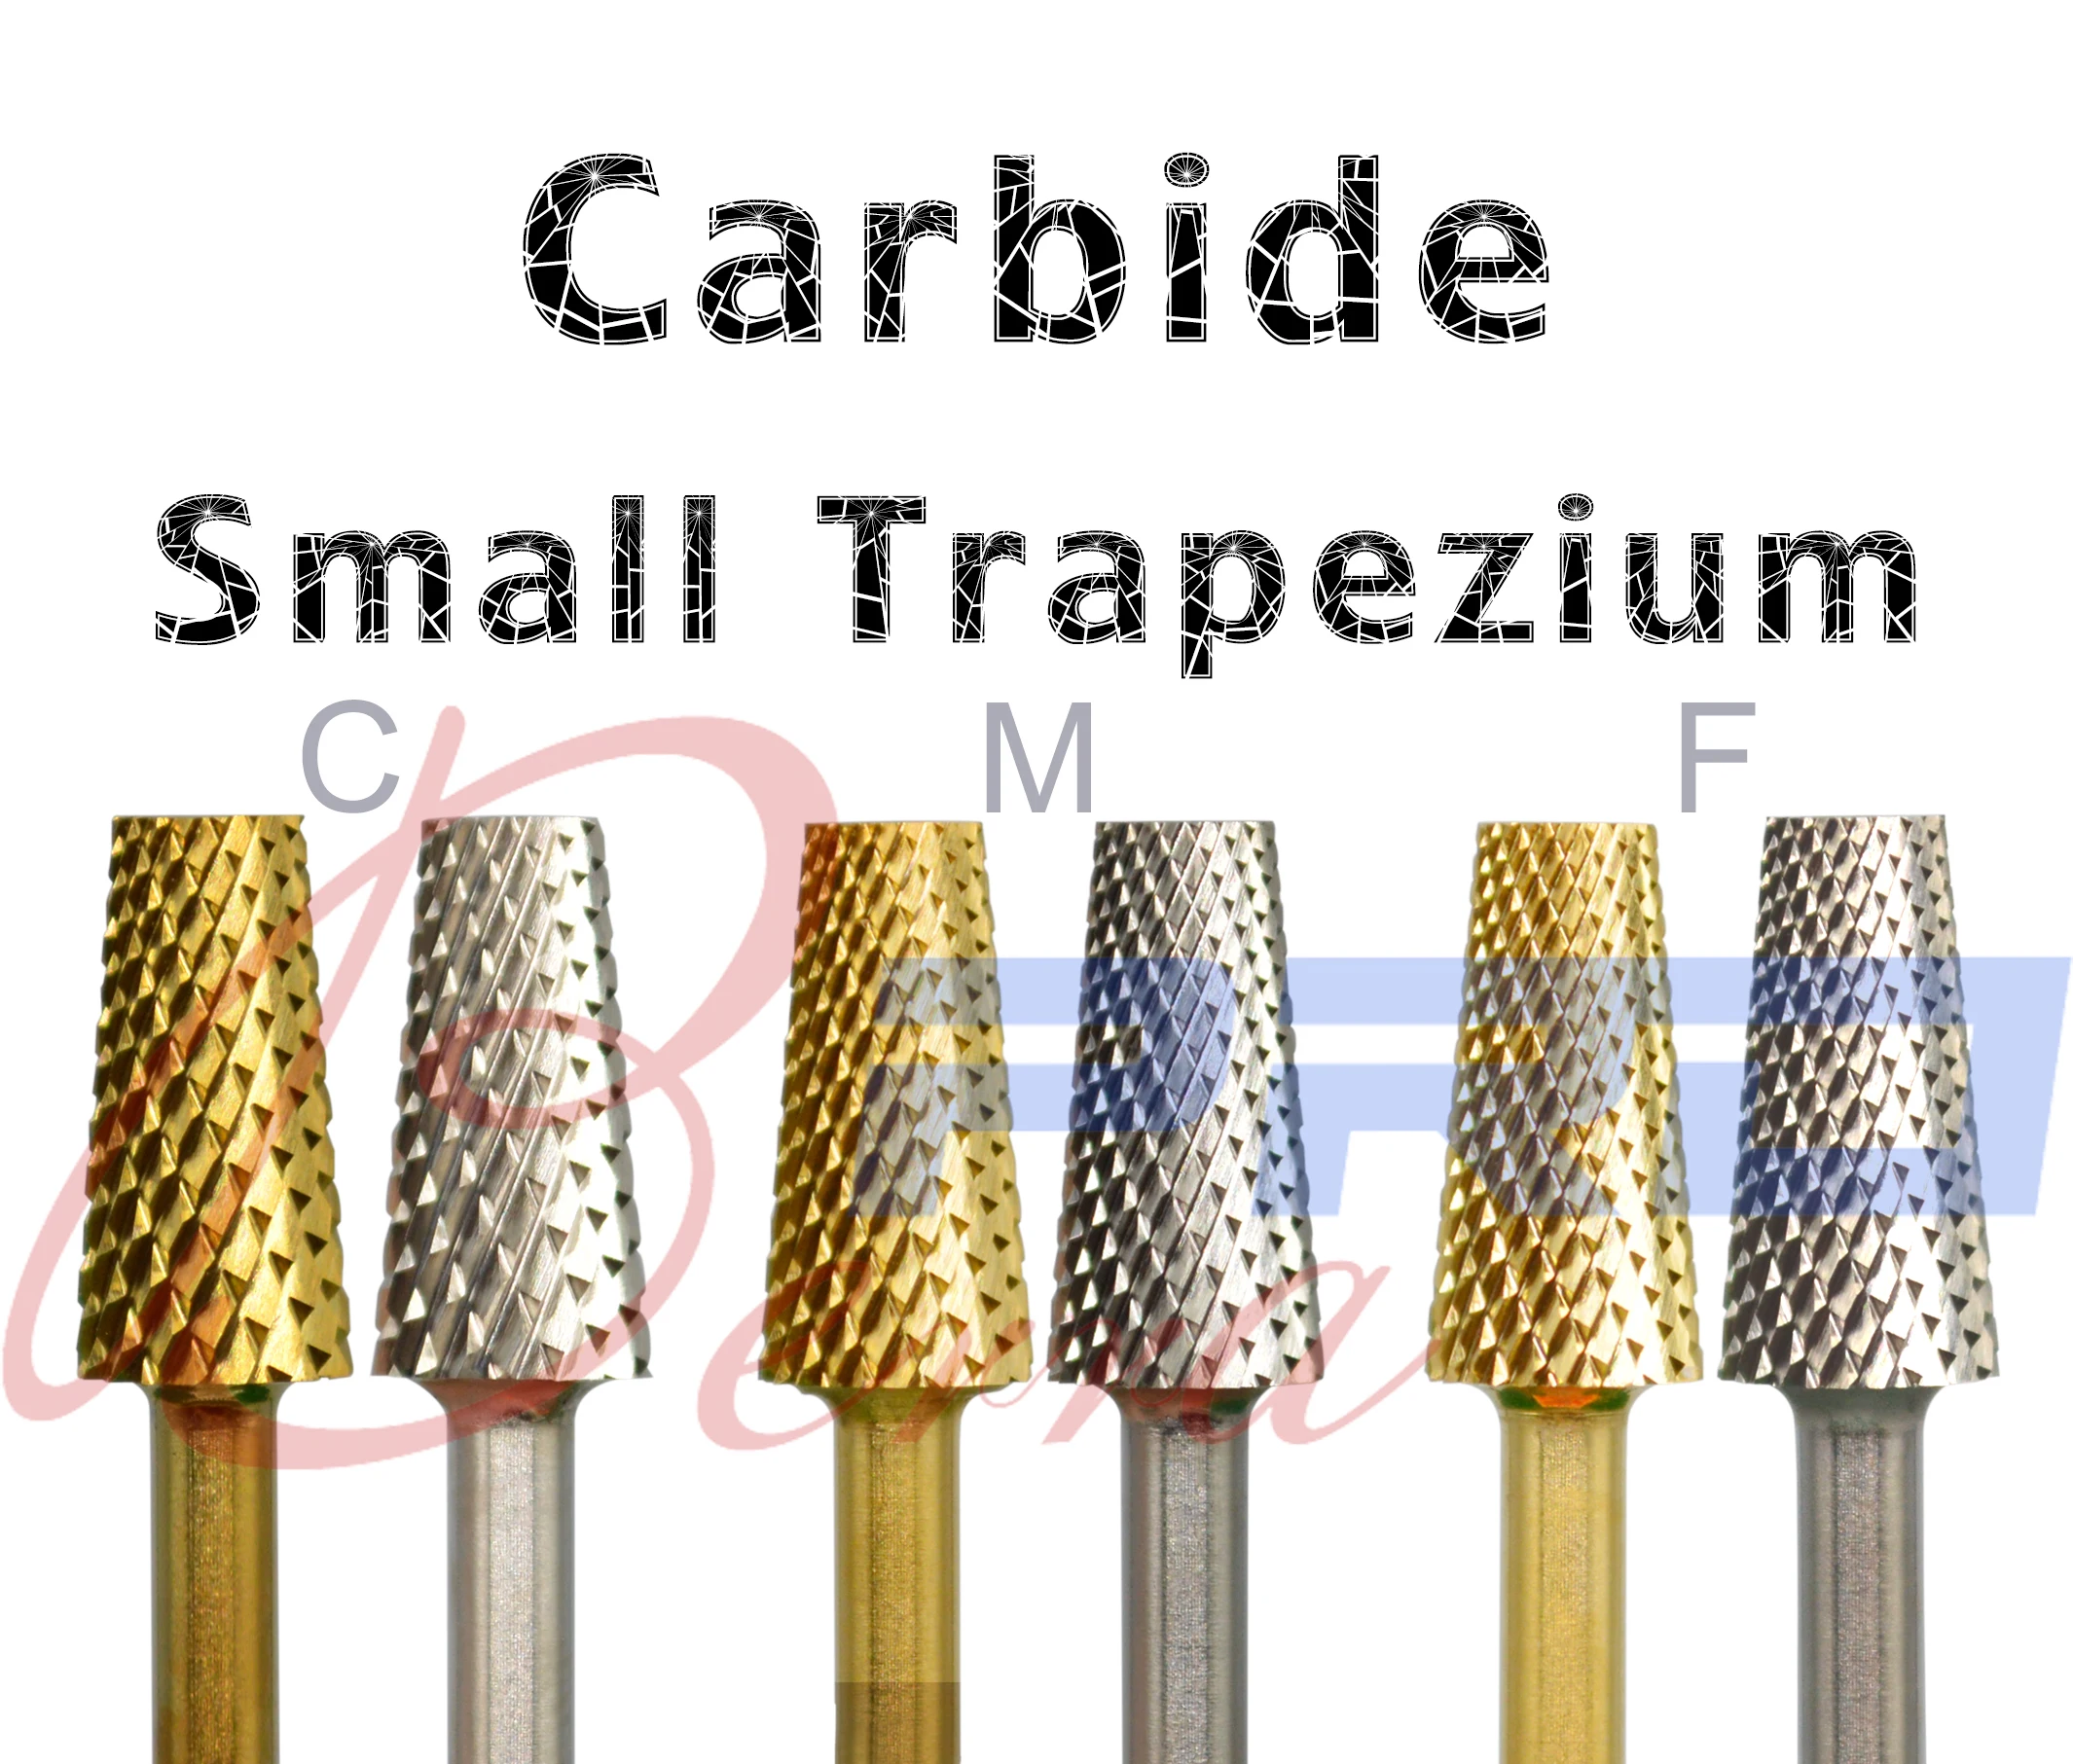 

Proberra 5.2 Small Trapezium Tapered Barrel Gold Silver Tungsten steel Accessory Carbide Mills Nail Drill Bit Manicure pedicure